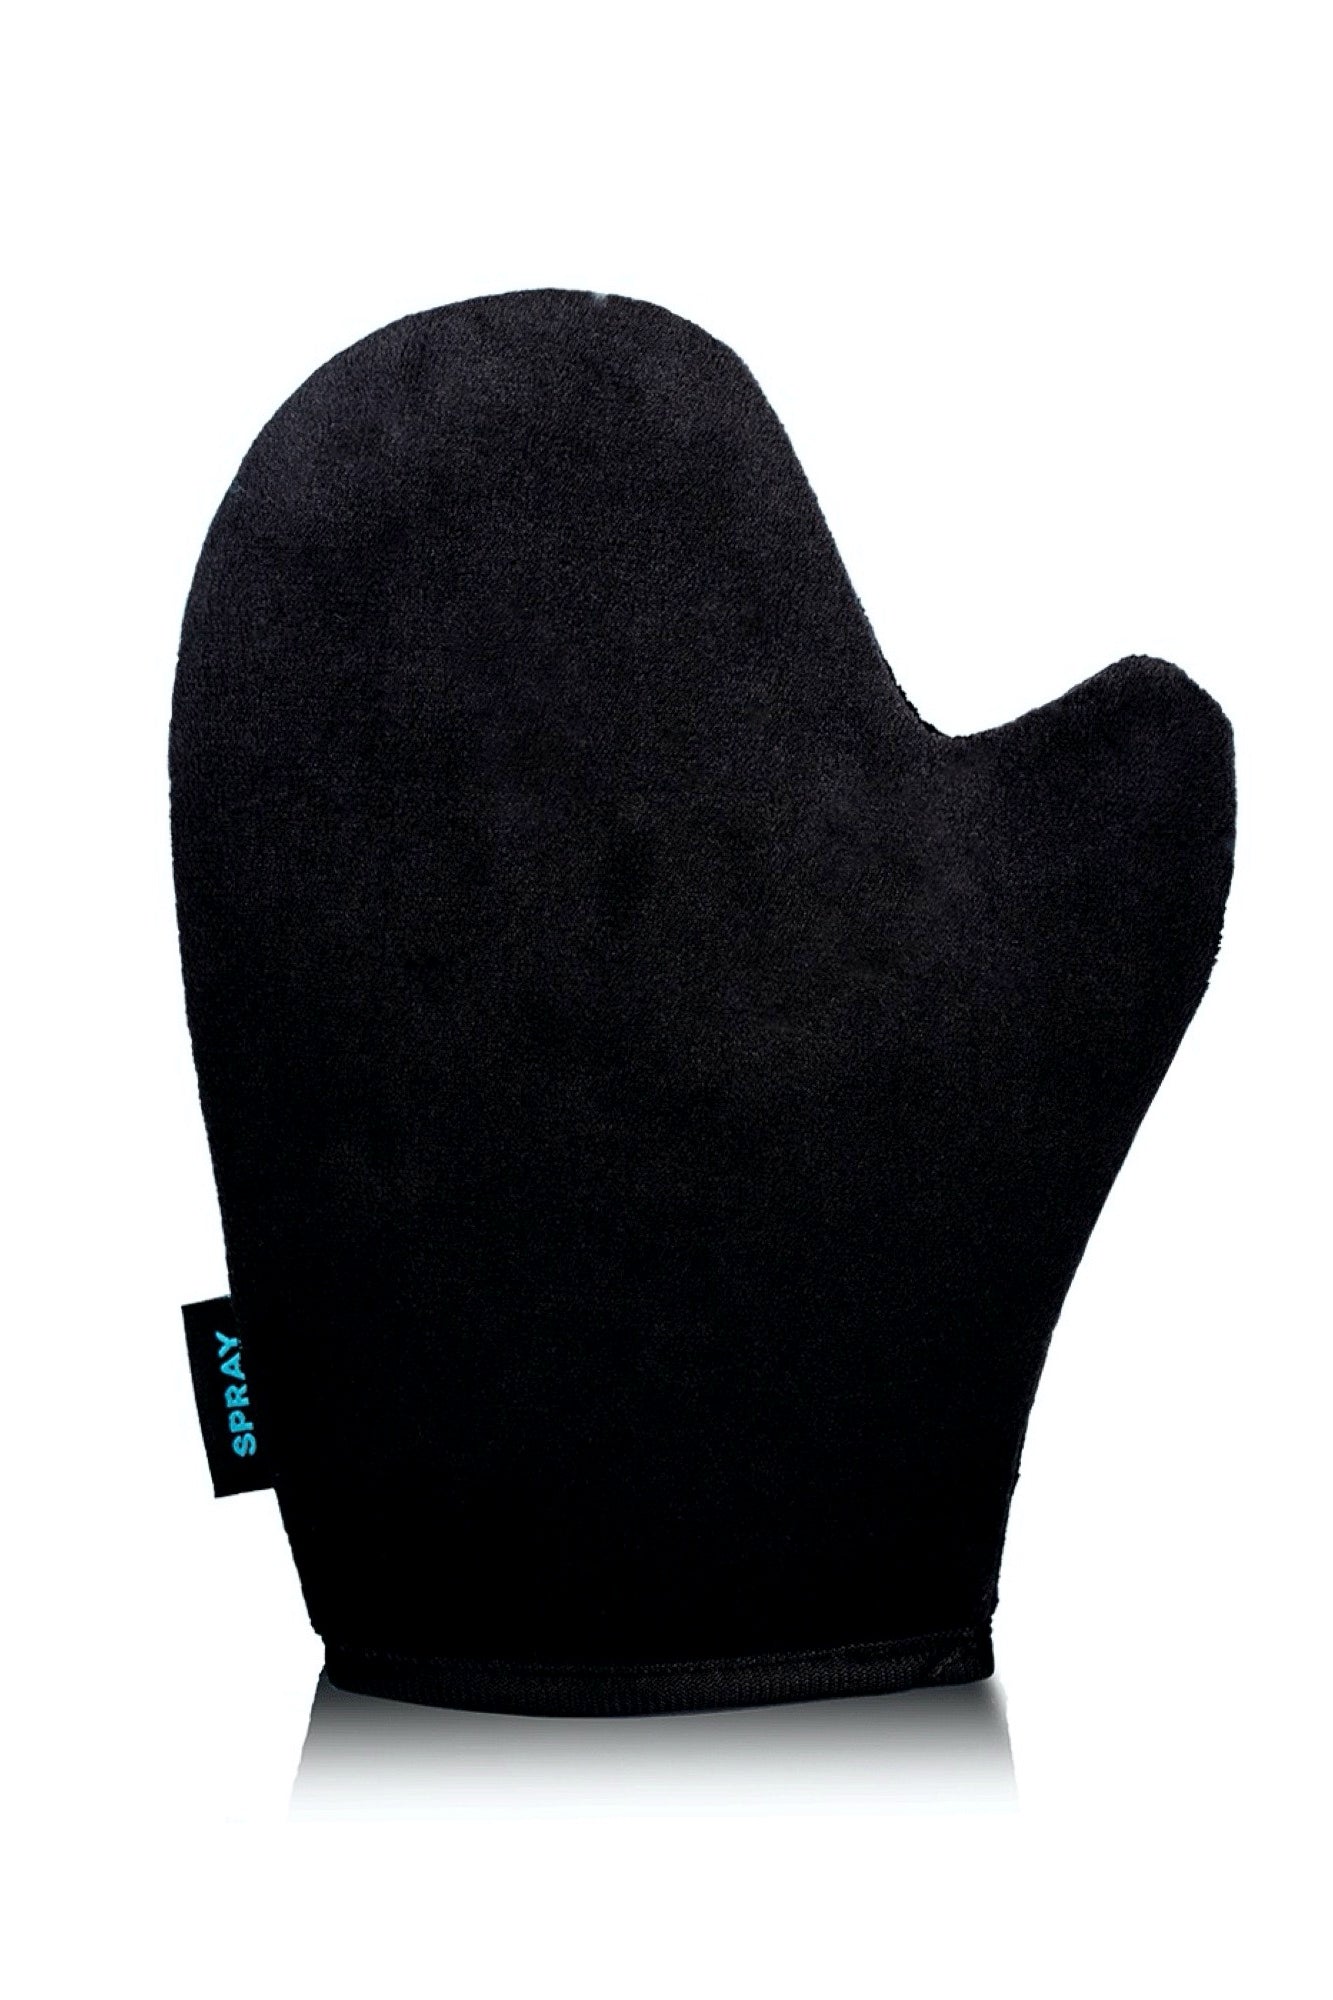 SPRAY AUS - Application Glove